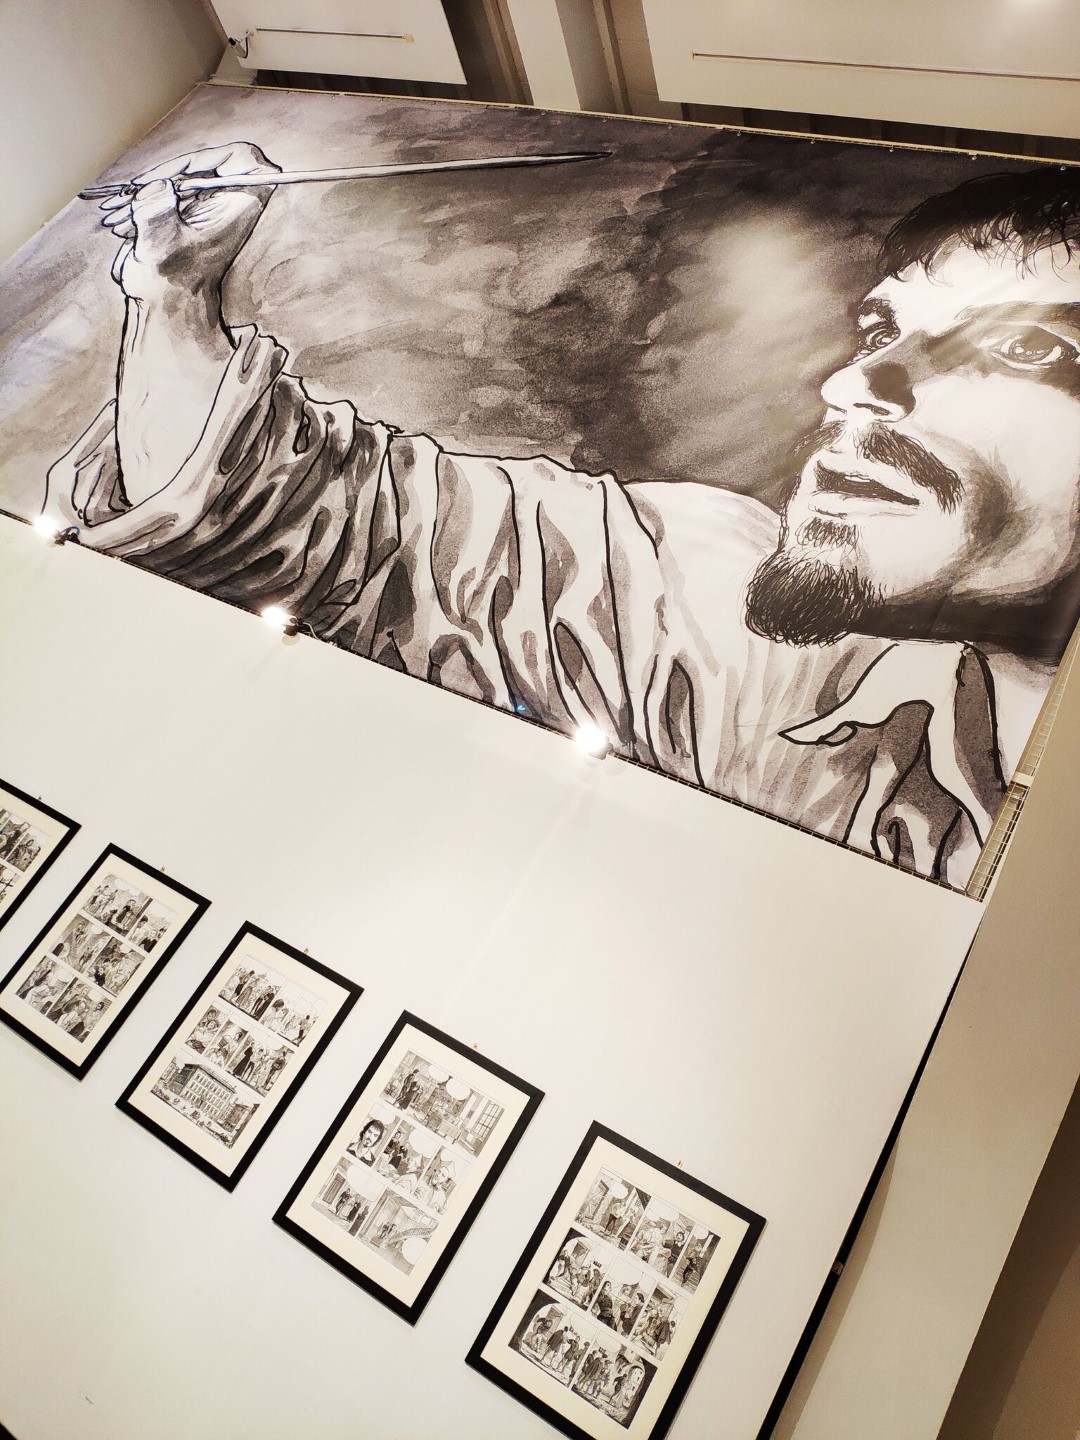 Porta Sant’Andrea: domenica 28 ottobre visita alla Mostra “Manara, biografo di Caravaggio”